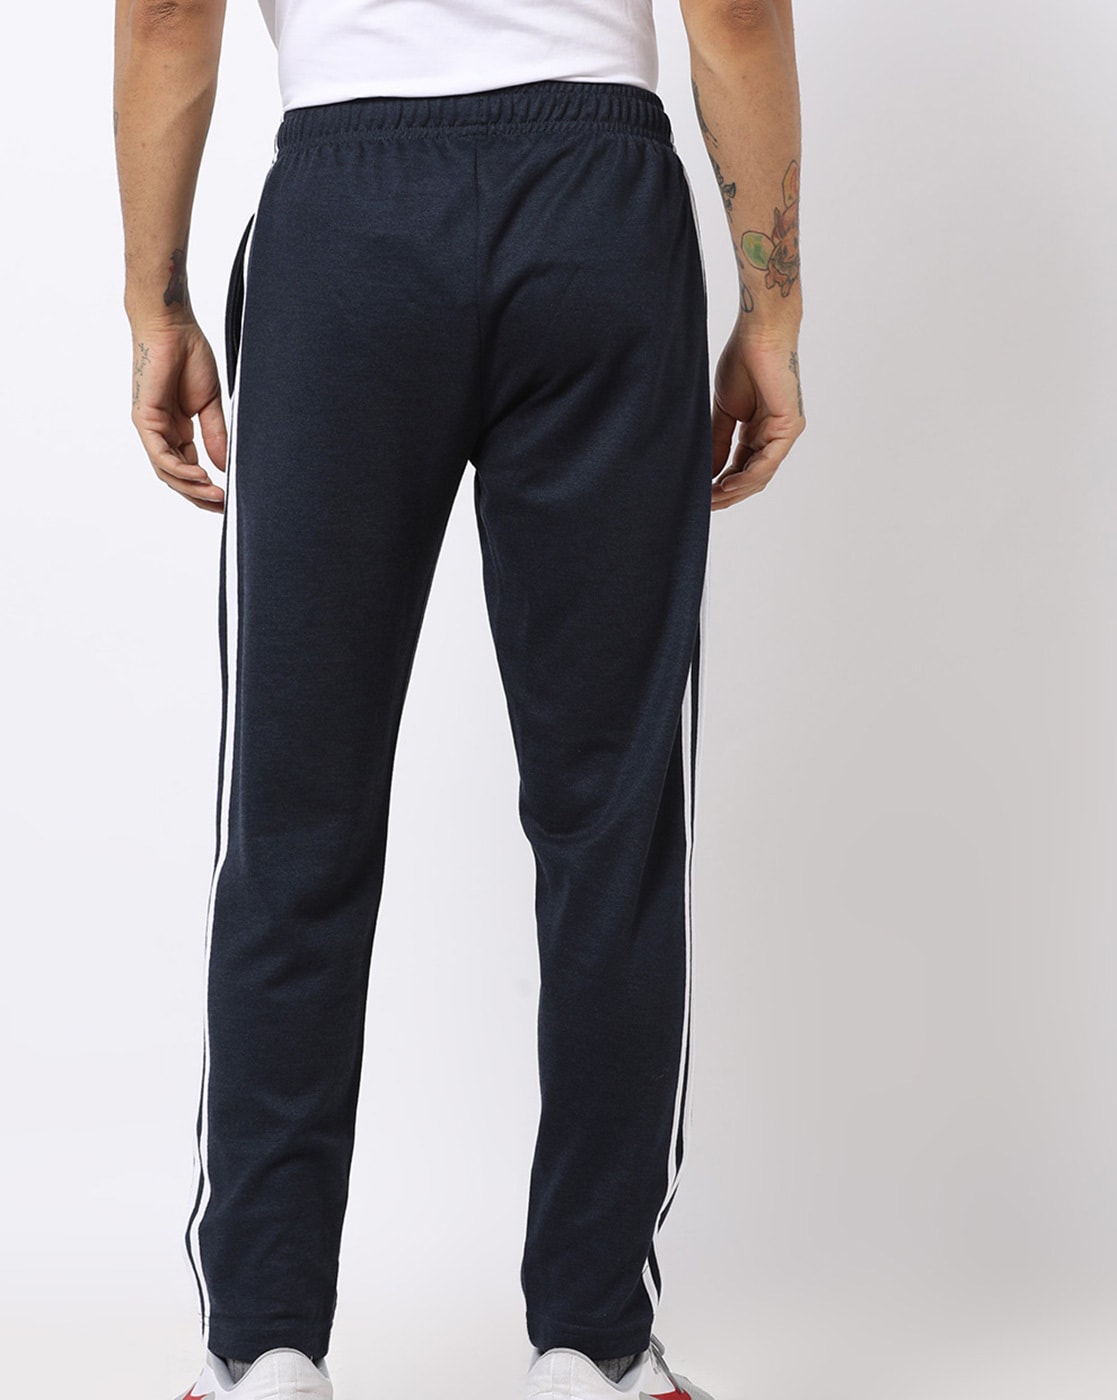 Buy Cream Track Pants for Men by Teamspirit Online | Ajio.com